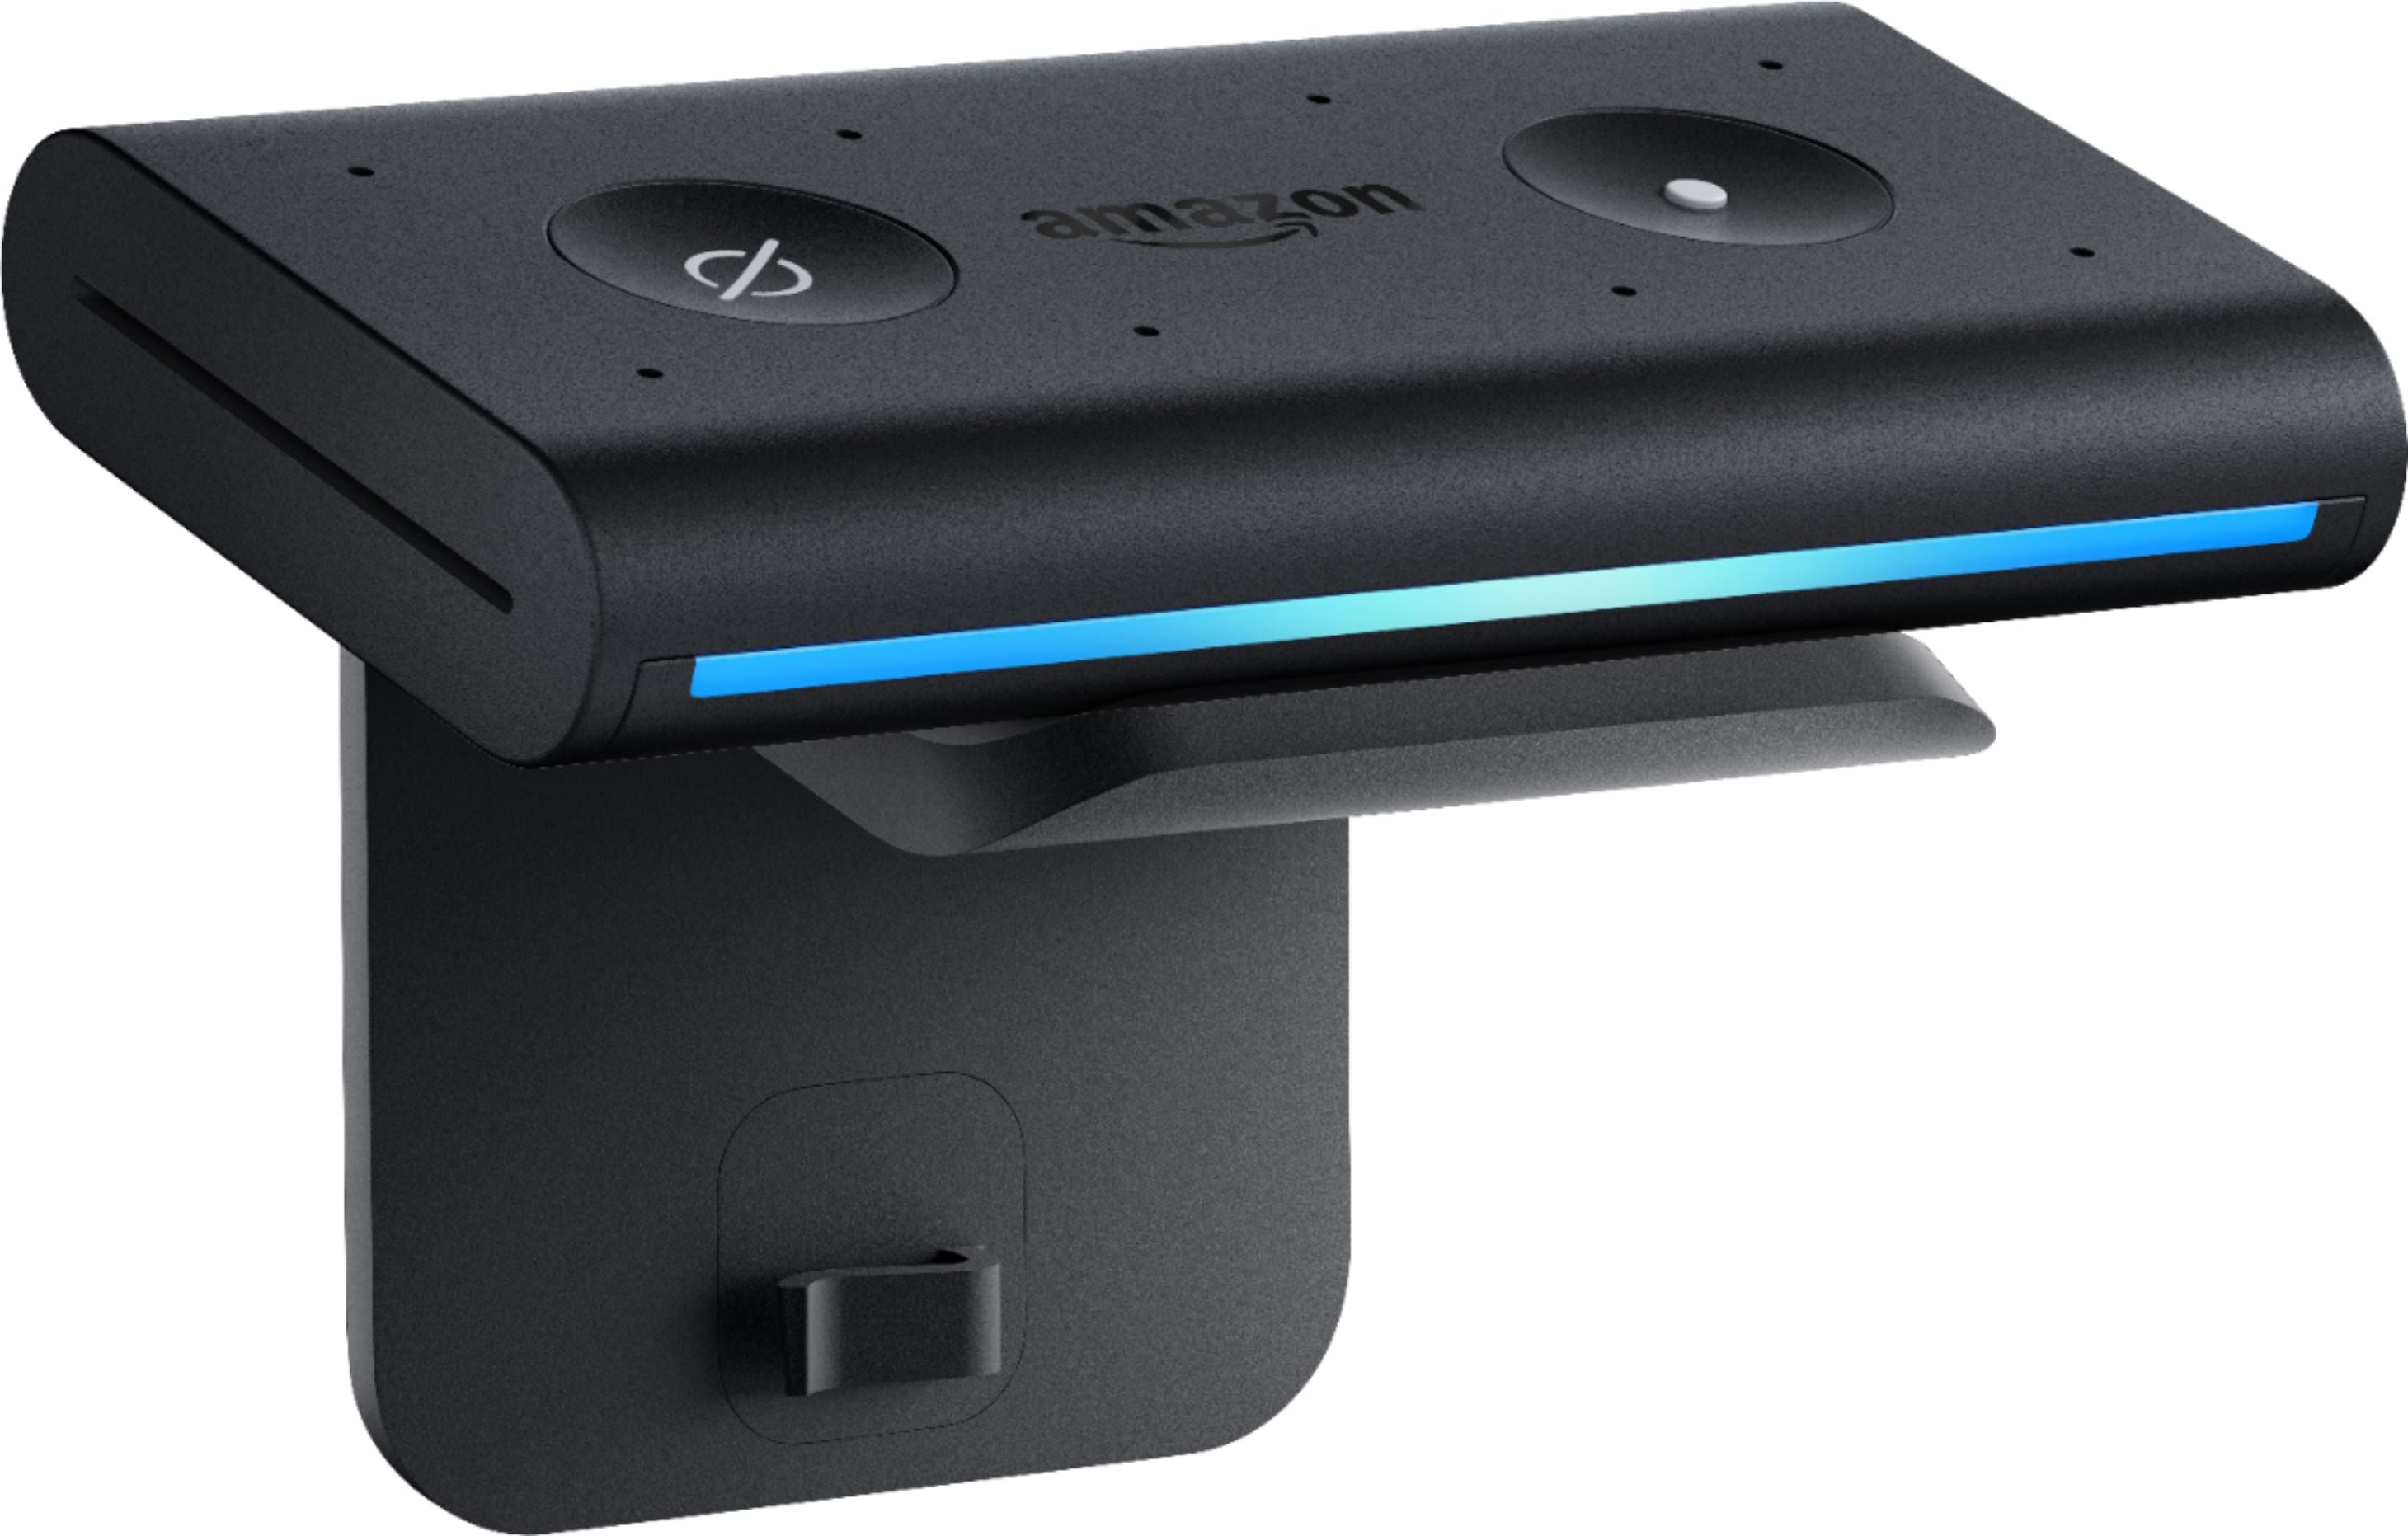 Amazon Echo Auto Smart Speaker + Smart Plug + Cat5 Cable + Batteries Bundle